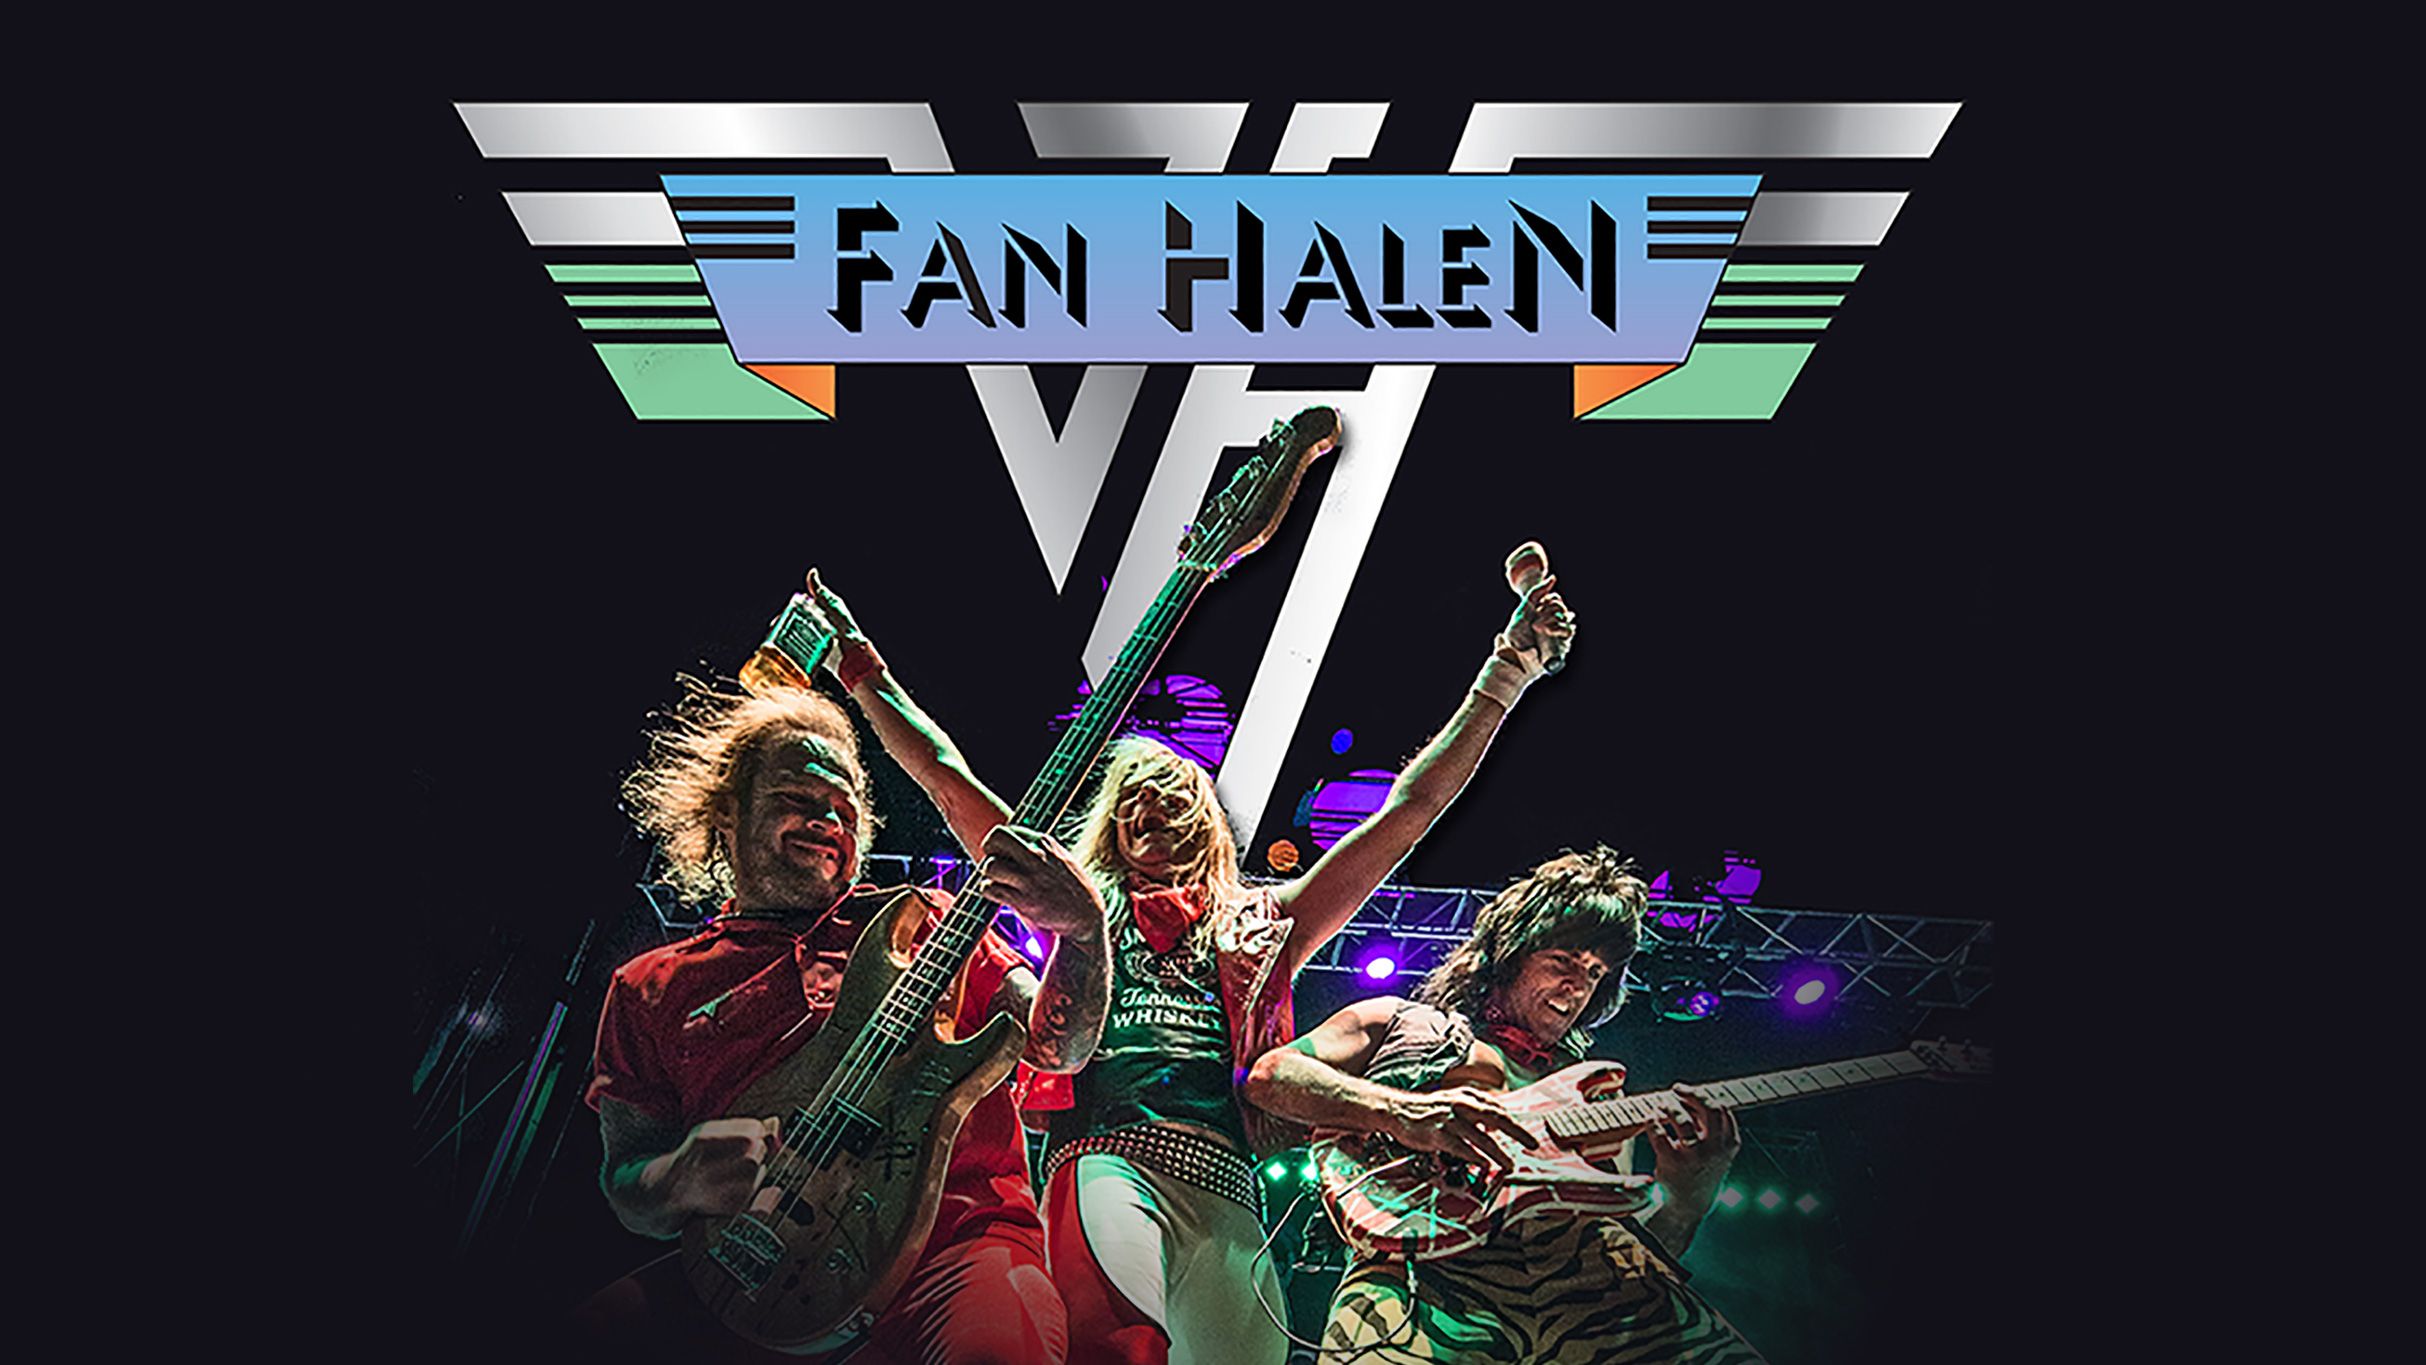 Fan Halen - The Worlds #1 Tribute to Van Halen